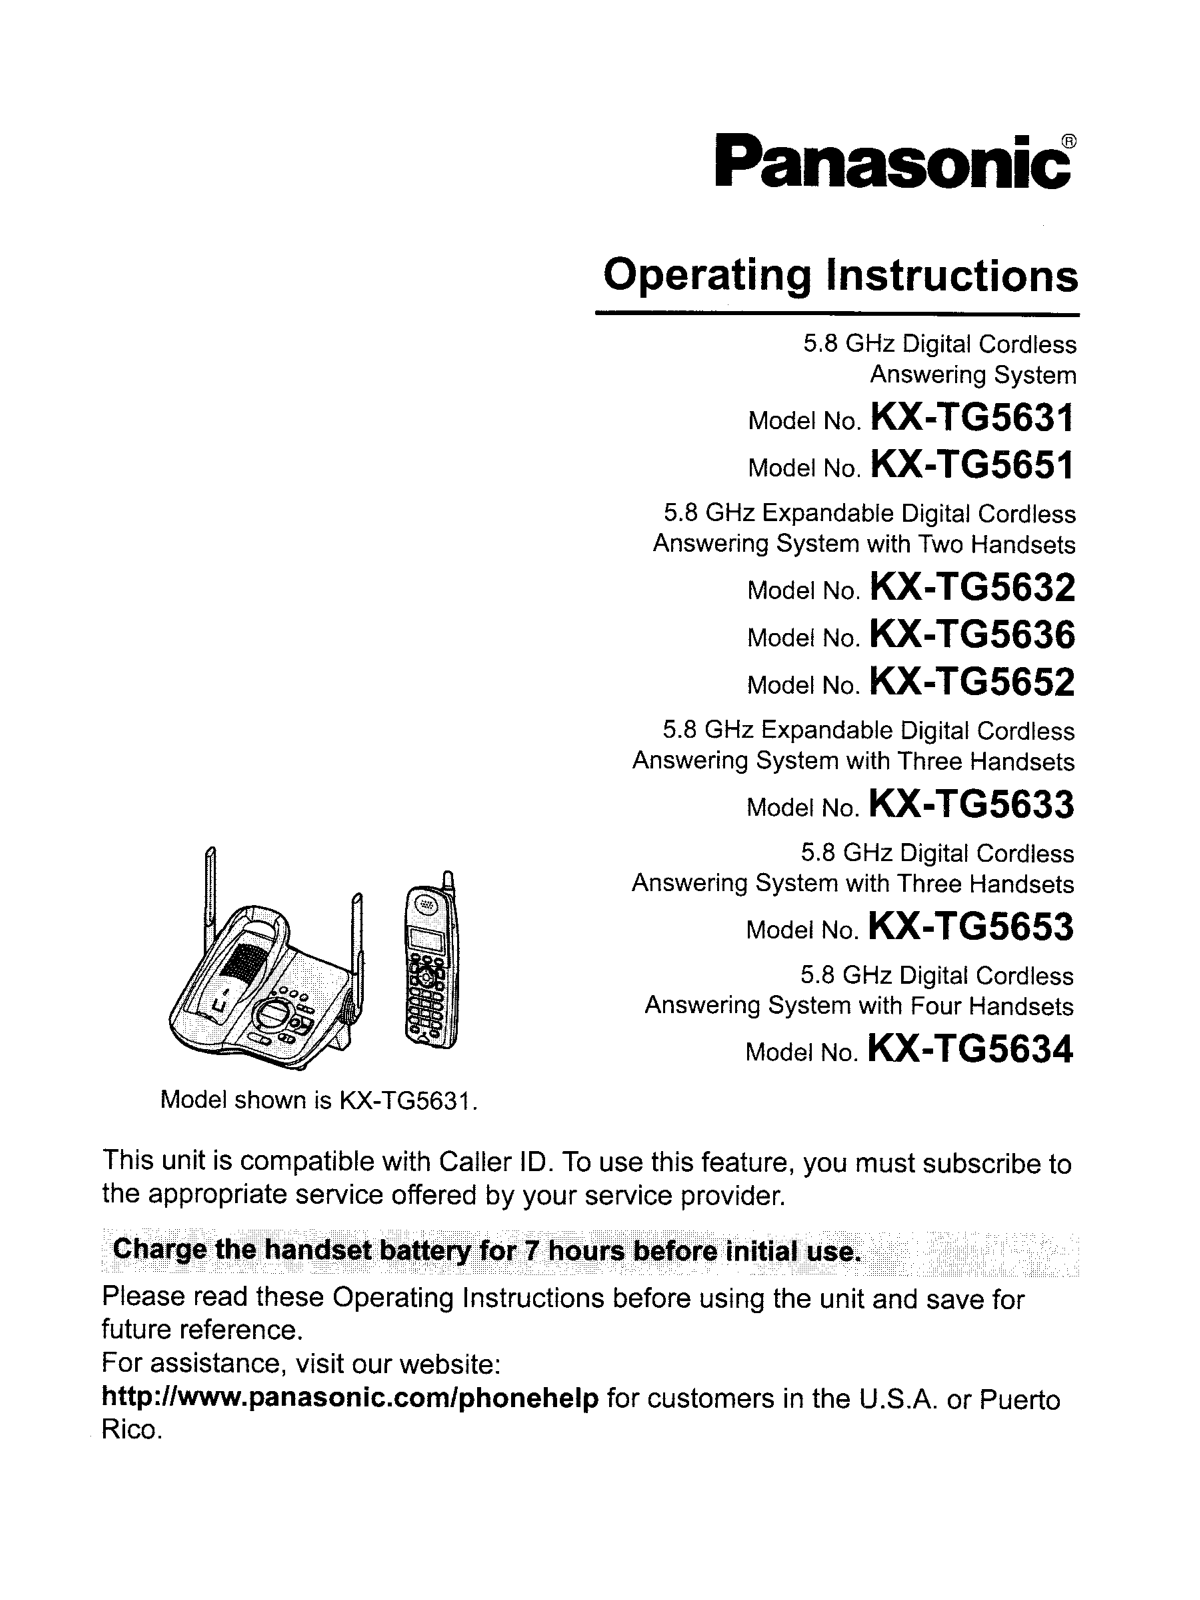 Panasonic KX-TG5653, KX-TG5636, KX-TG5633, KX-TG5631, KX-TG5652 User Manual